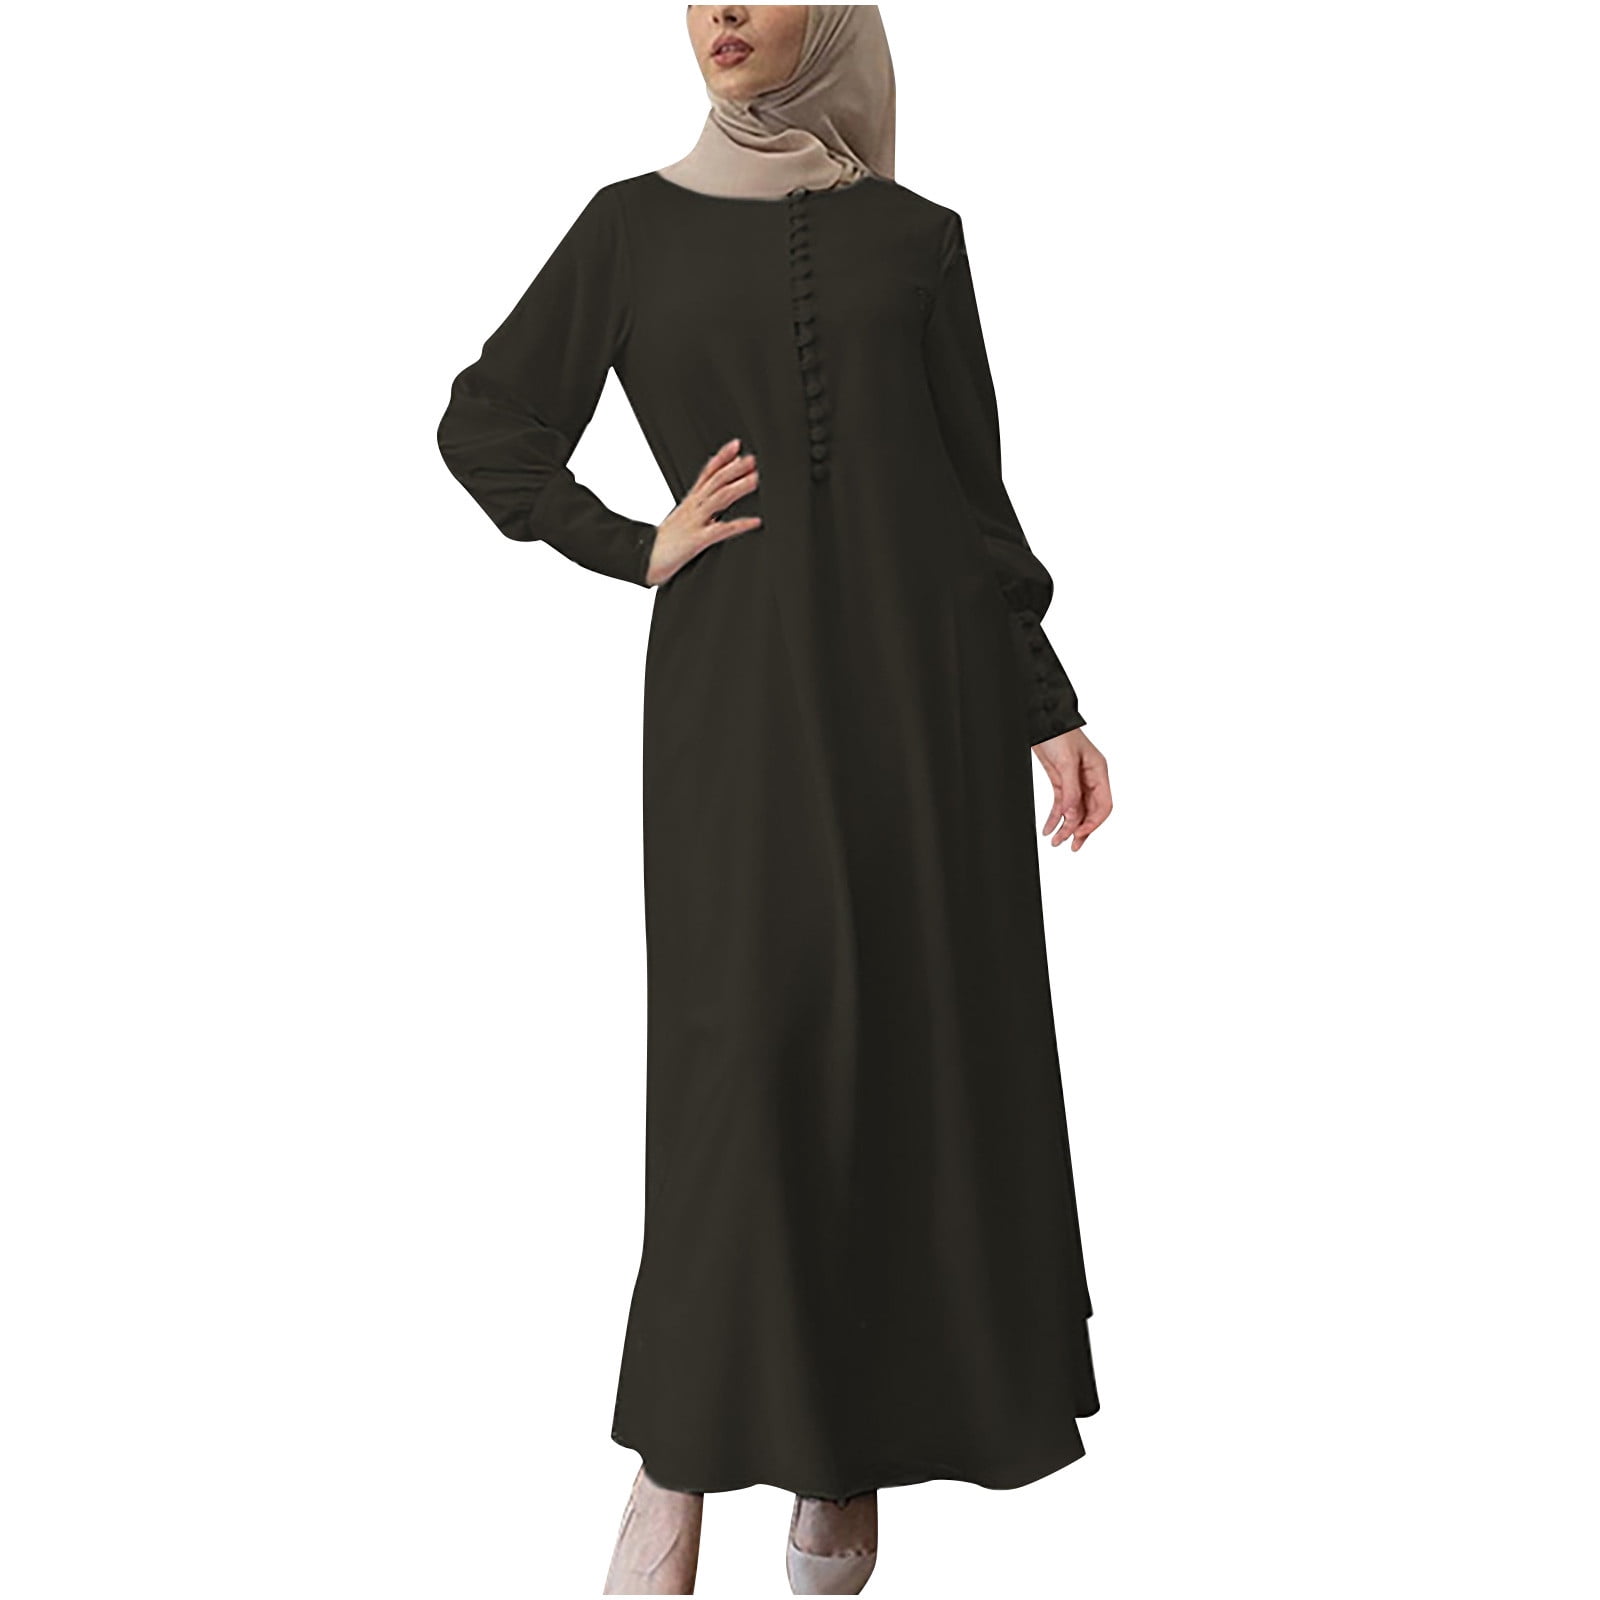 RQYYD Women's Casual Solid Muslim Dress Abaya Islamic Arab Kaftan